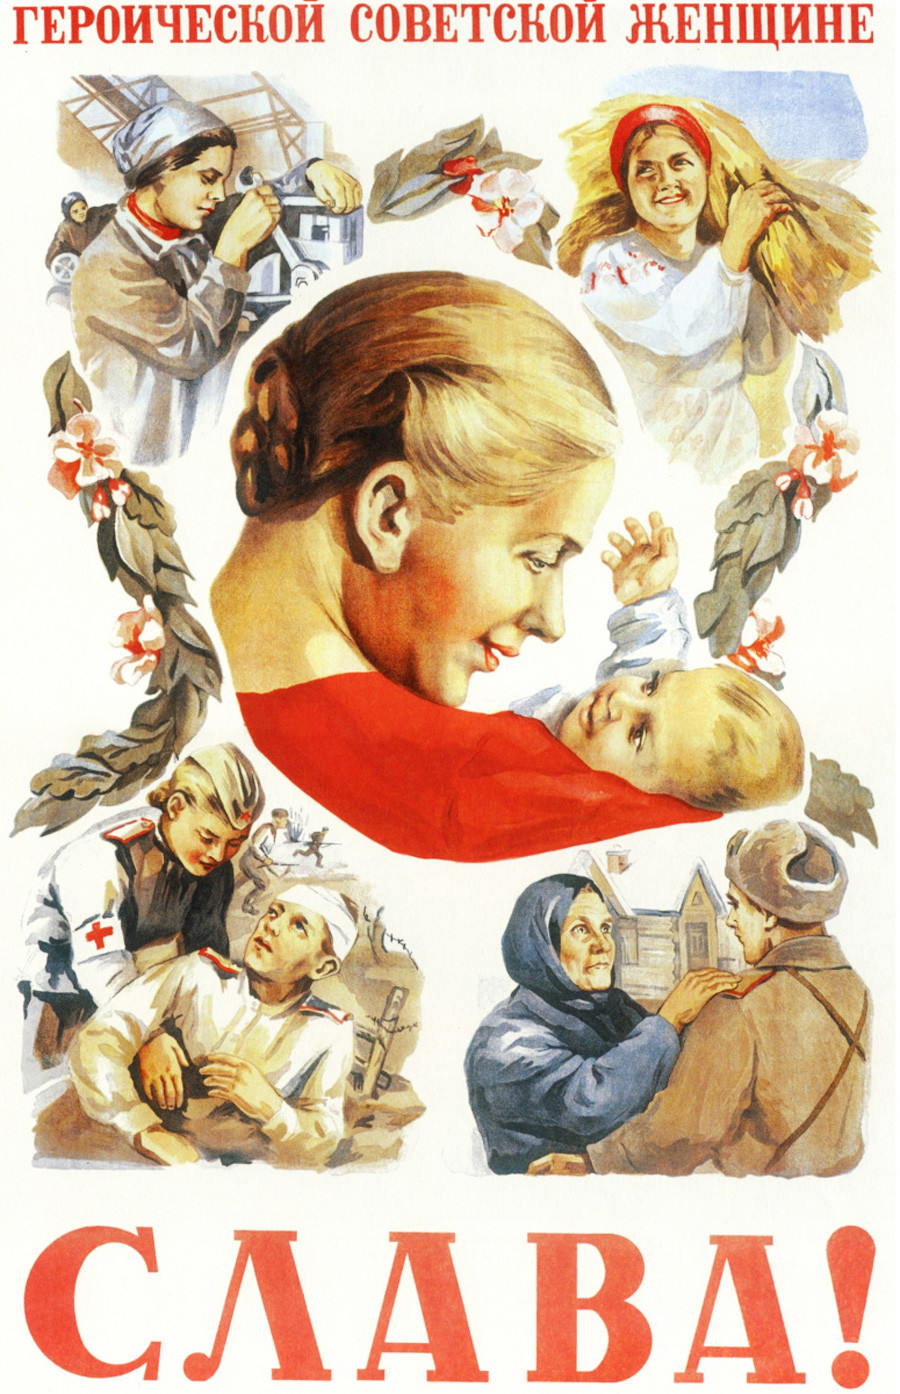 Gloire à l’héroïque femme soviétique !
